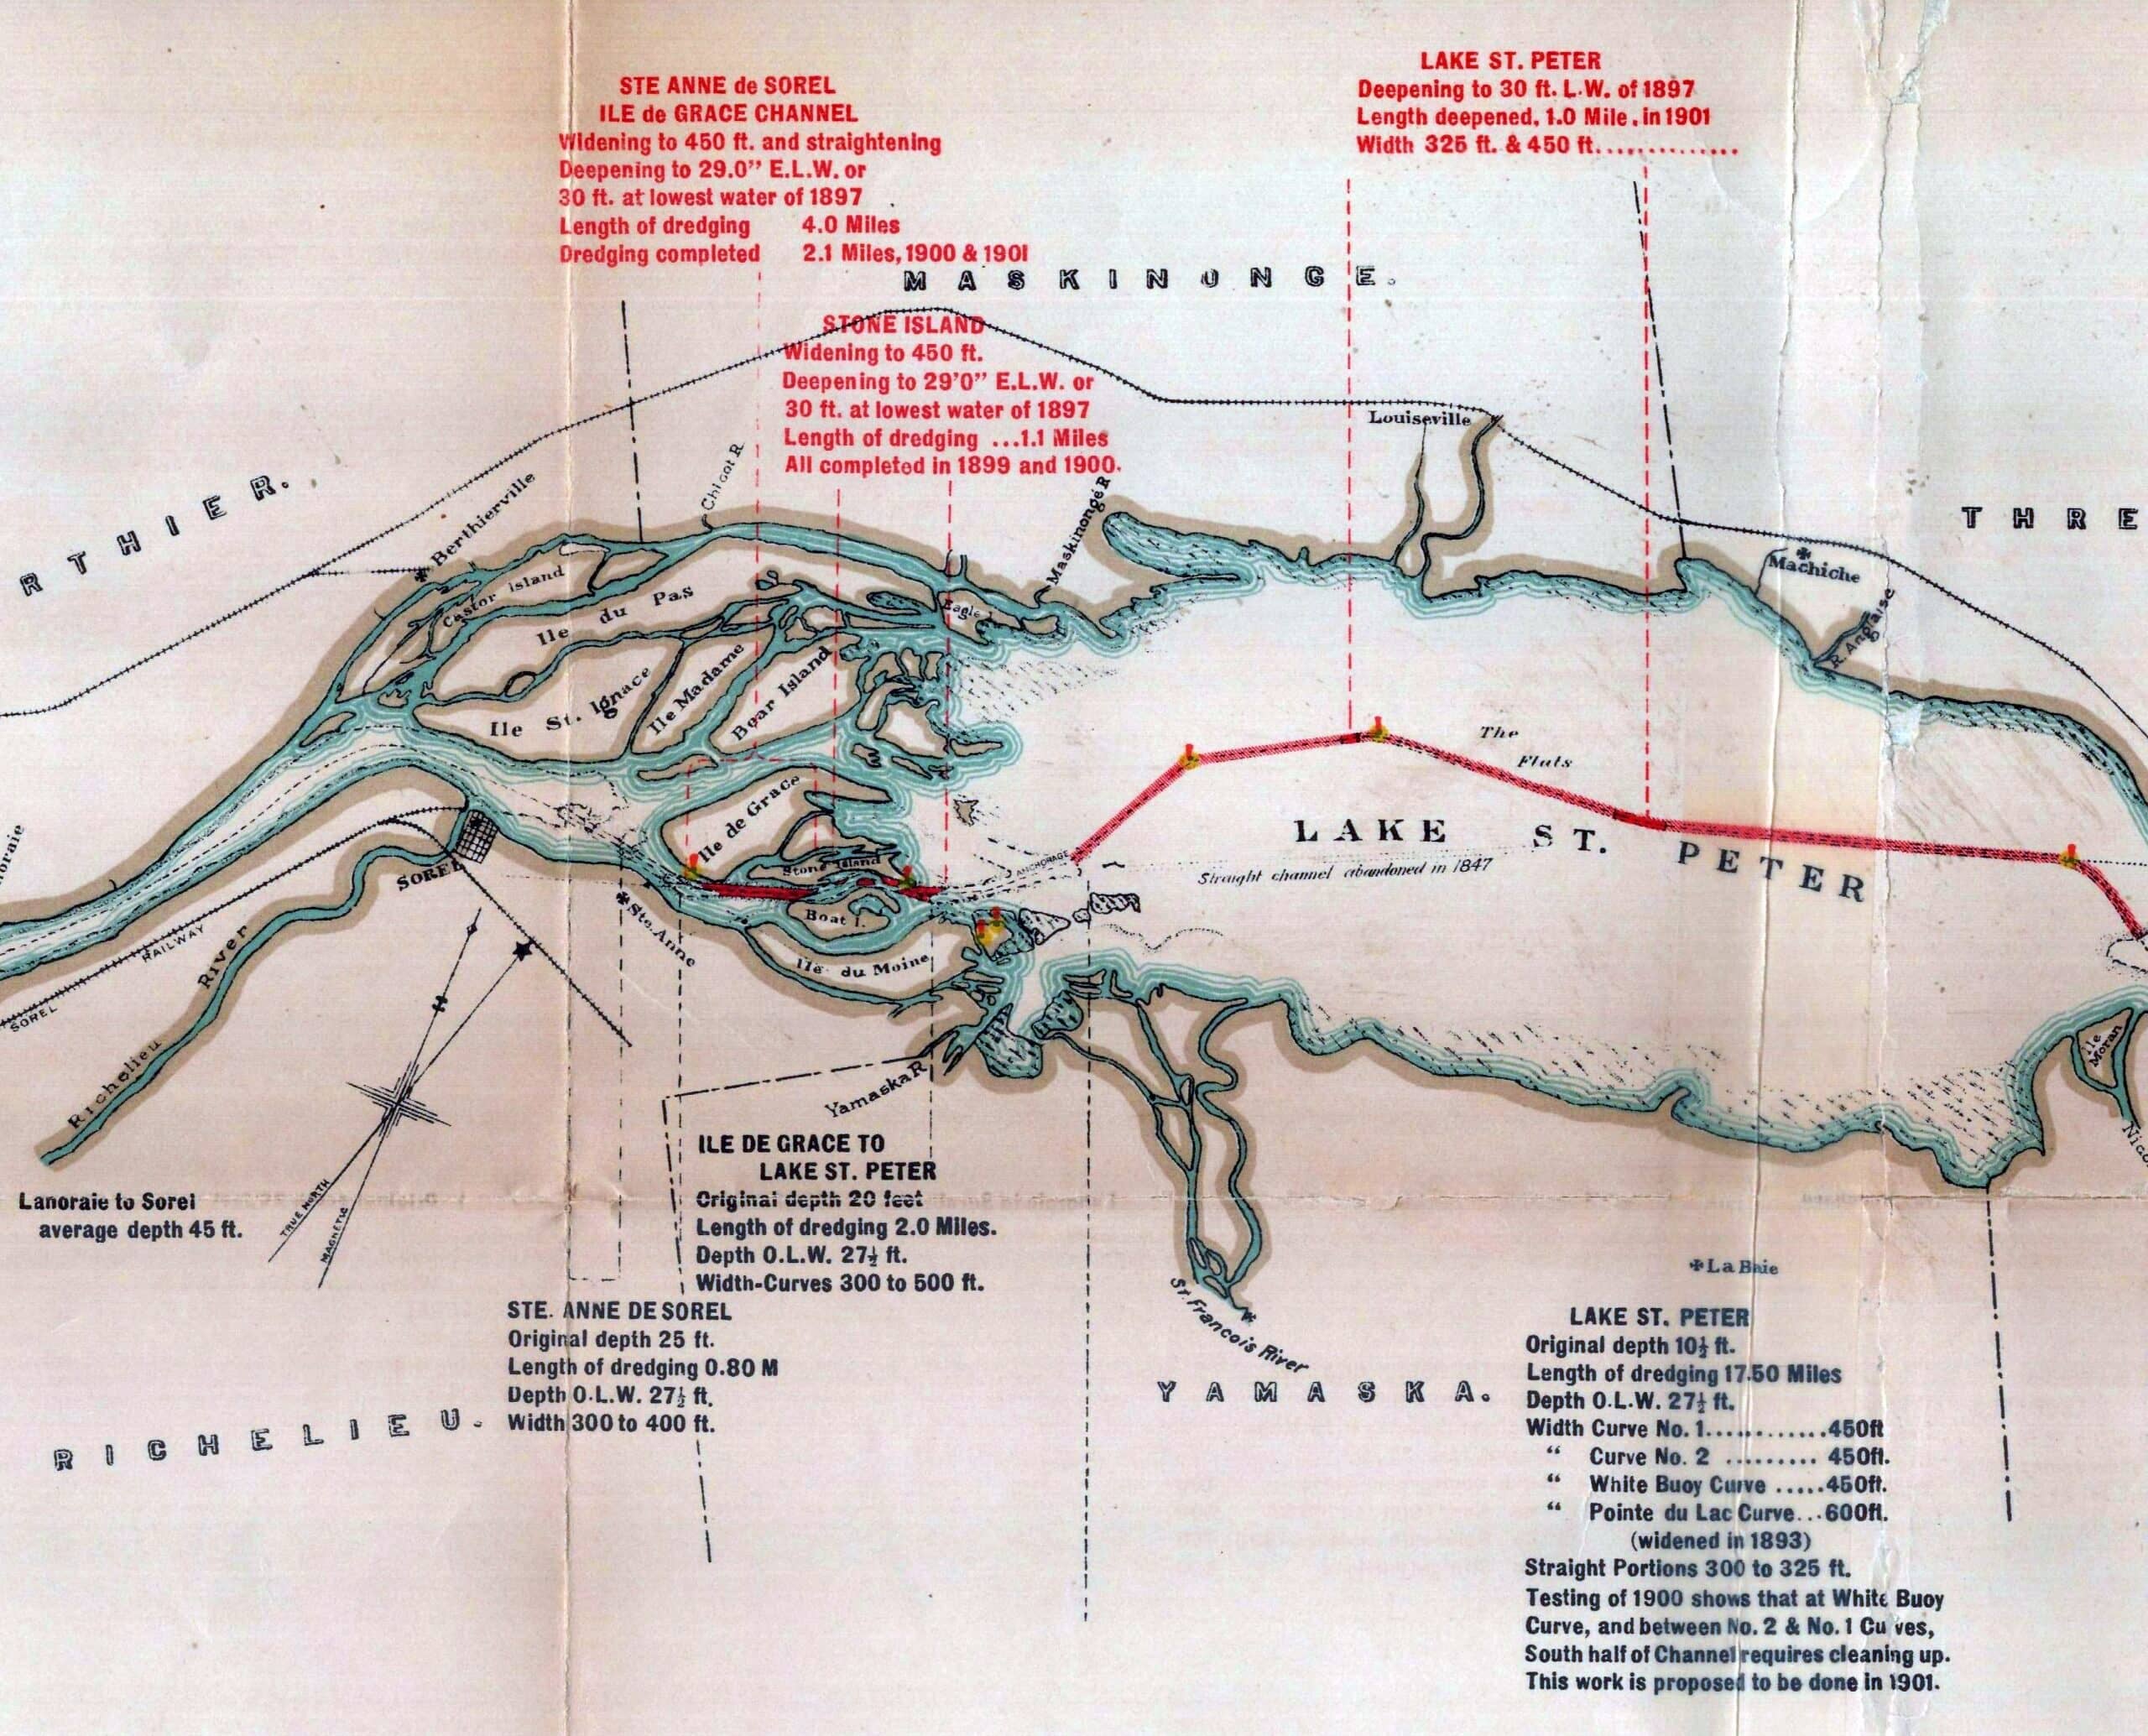 La controverse du chenal droit du lac Saint-Pierre, 1844-1847